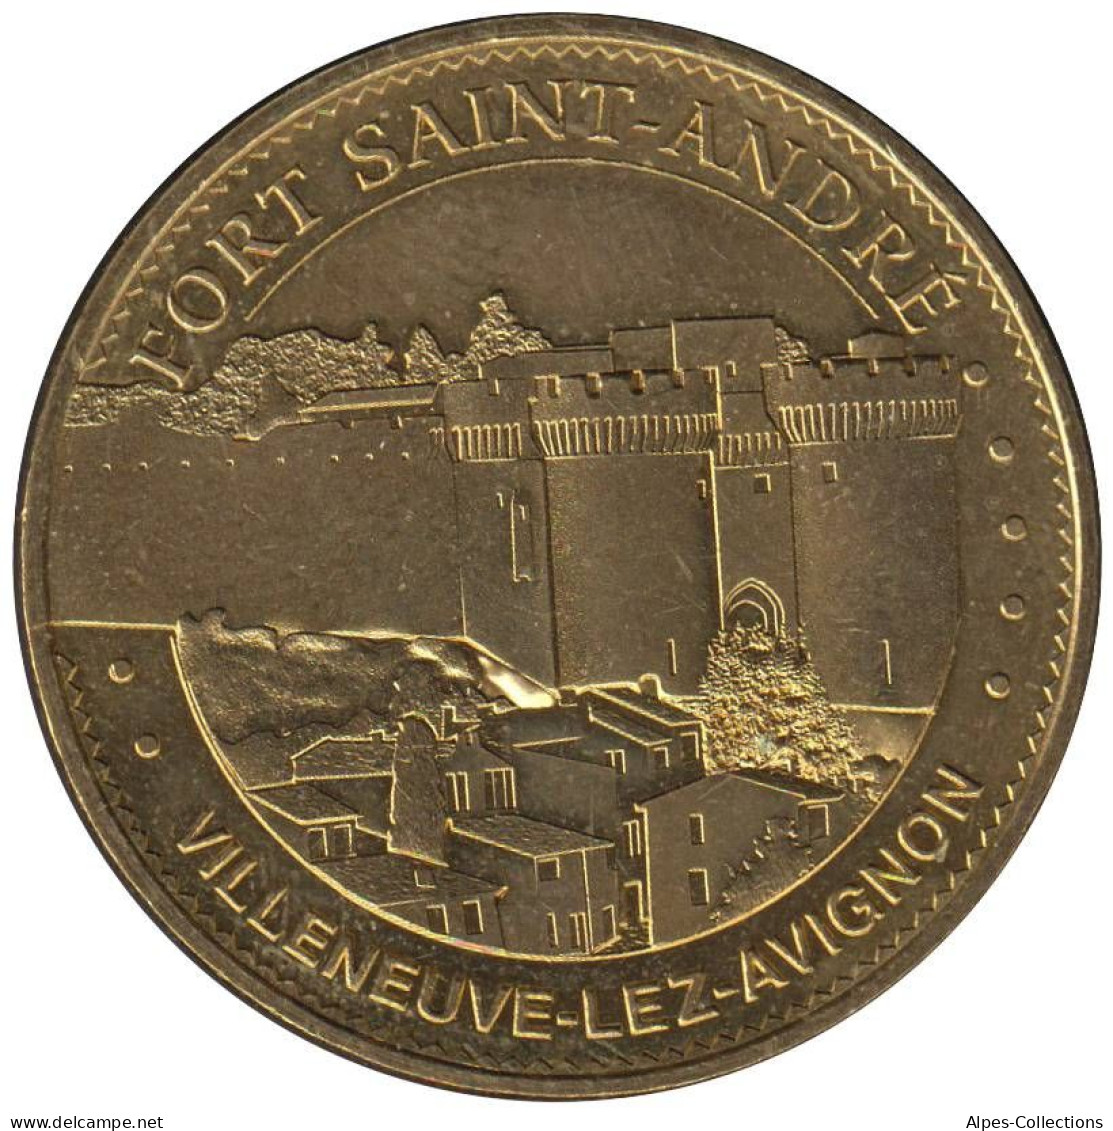 30-2085 - JETON TOURISTIQUE MDP - Villeneuve-lez-Avignon Fort Saint-André-2015.2 - 2015